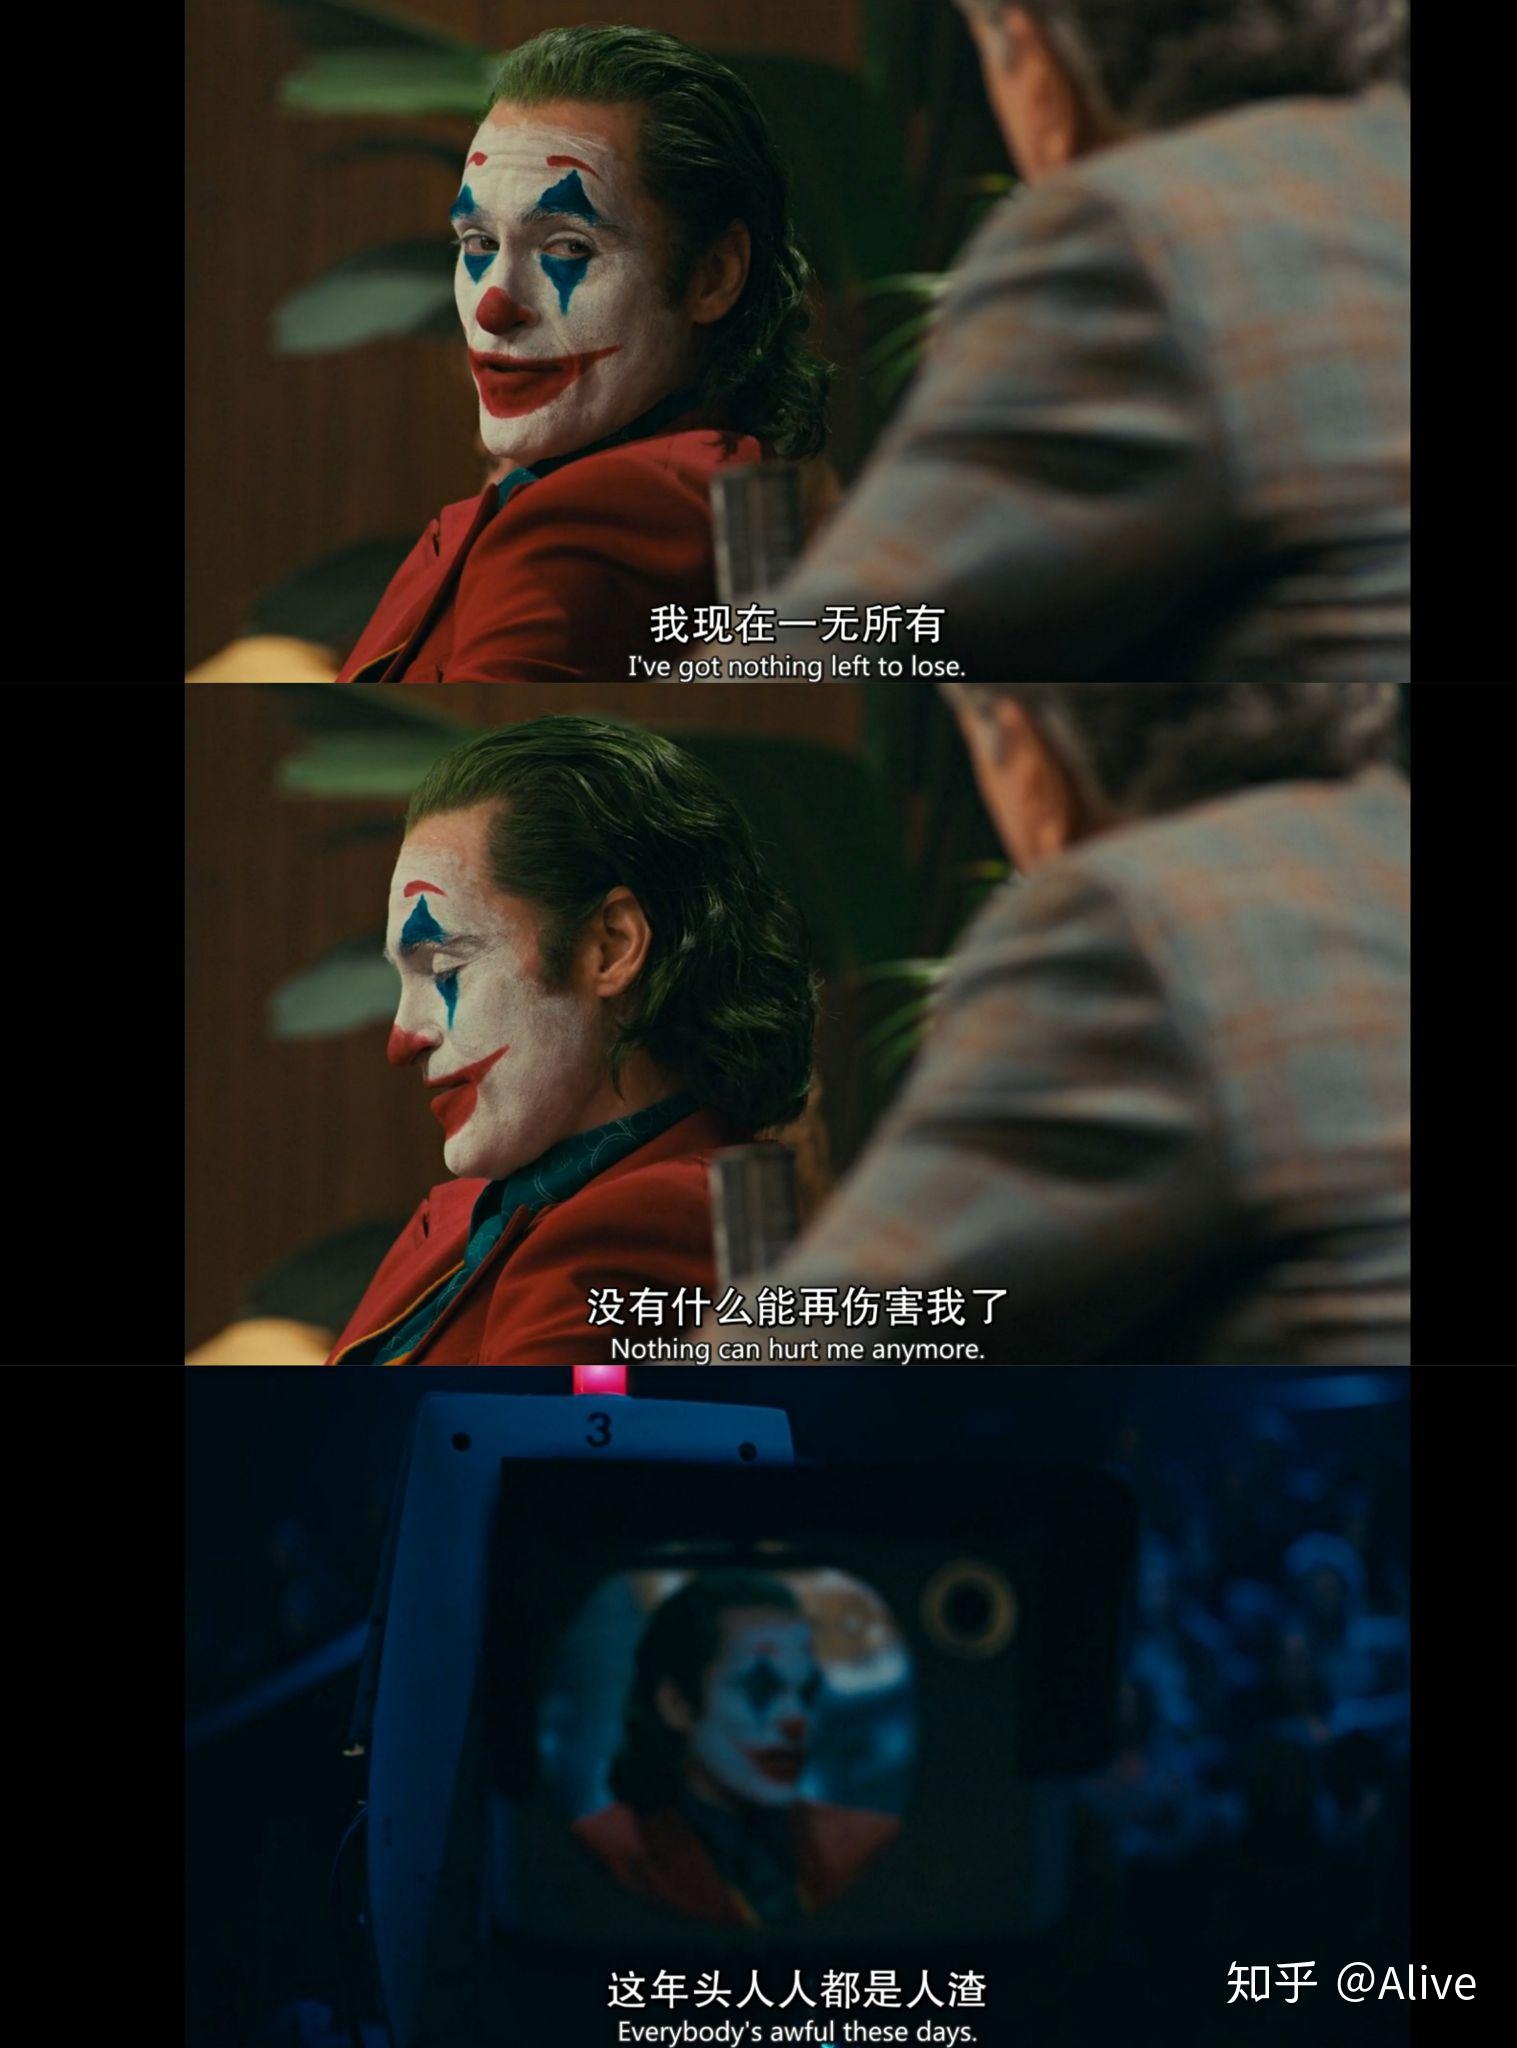 小丑电影截图经典台词图片